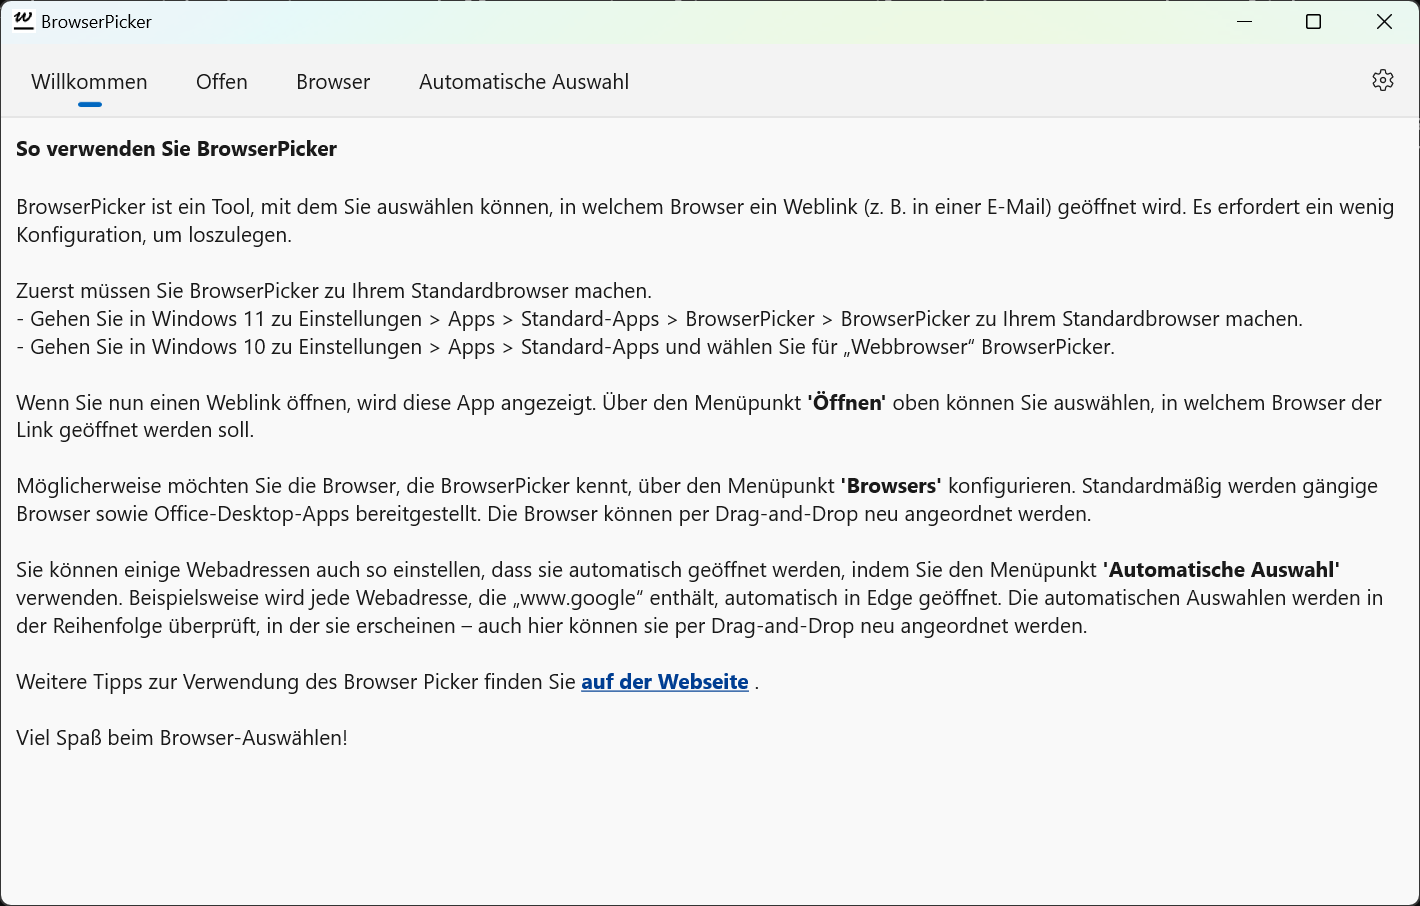 BrowserPicker - Willkommensseite mit grundlegenden Anweisungen zur Verwendung.